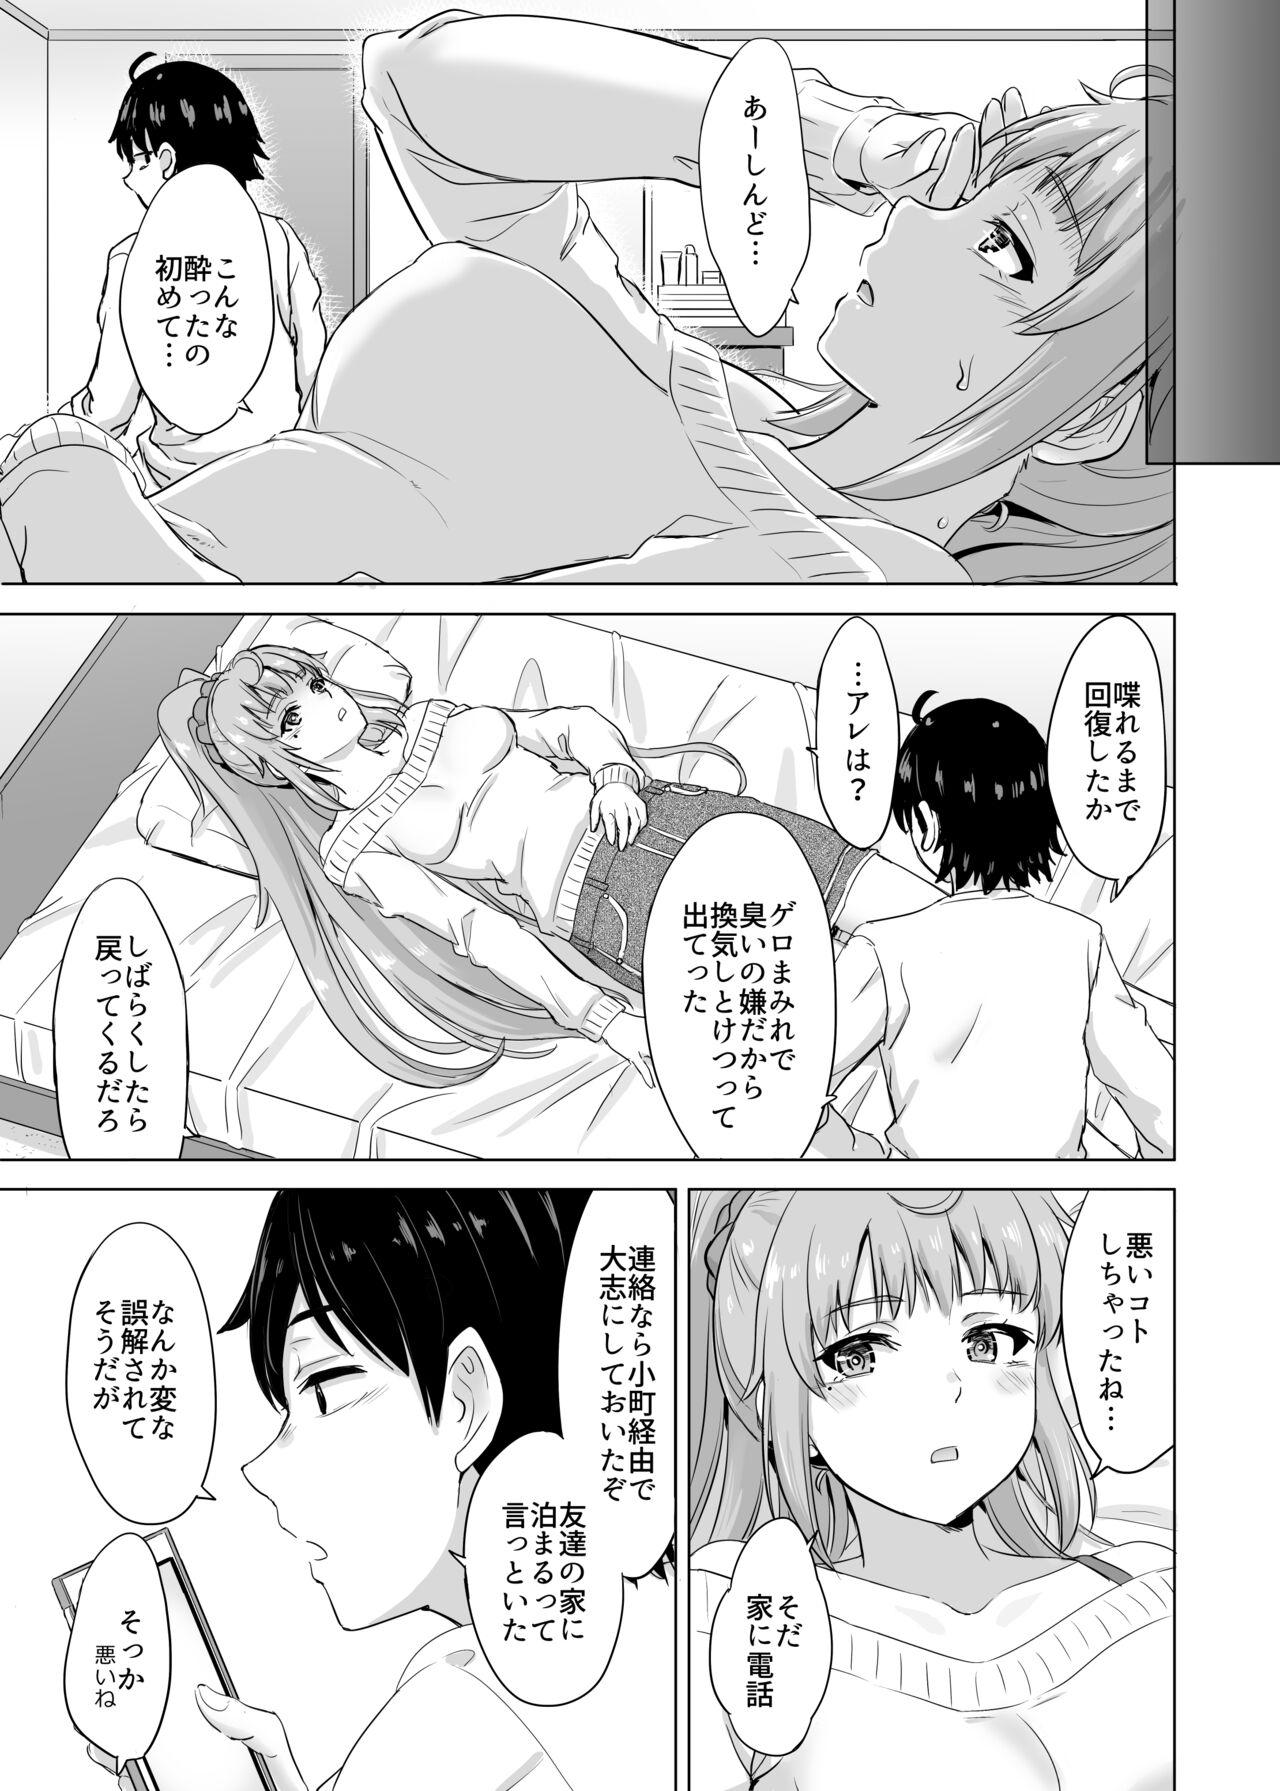 Gay Medical あーしさんサキサキ漫画 - Yahari ore no seishun love come wa machigatteiru Gay Pov - Picture 3